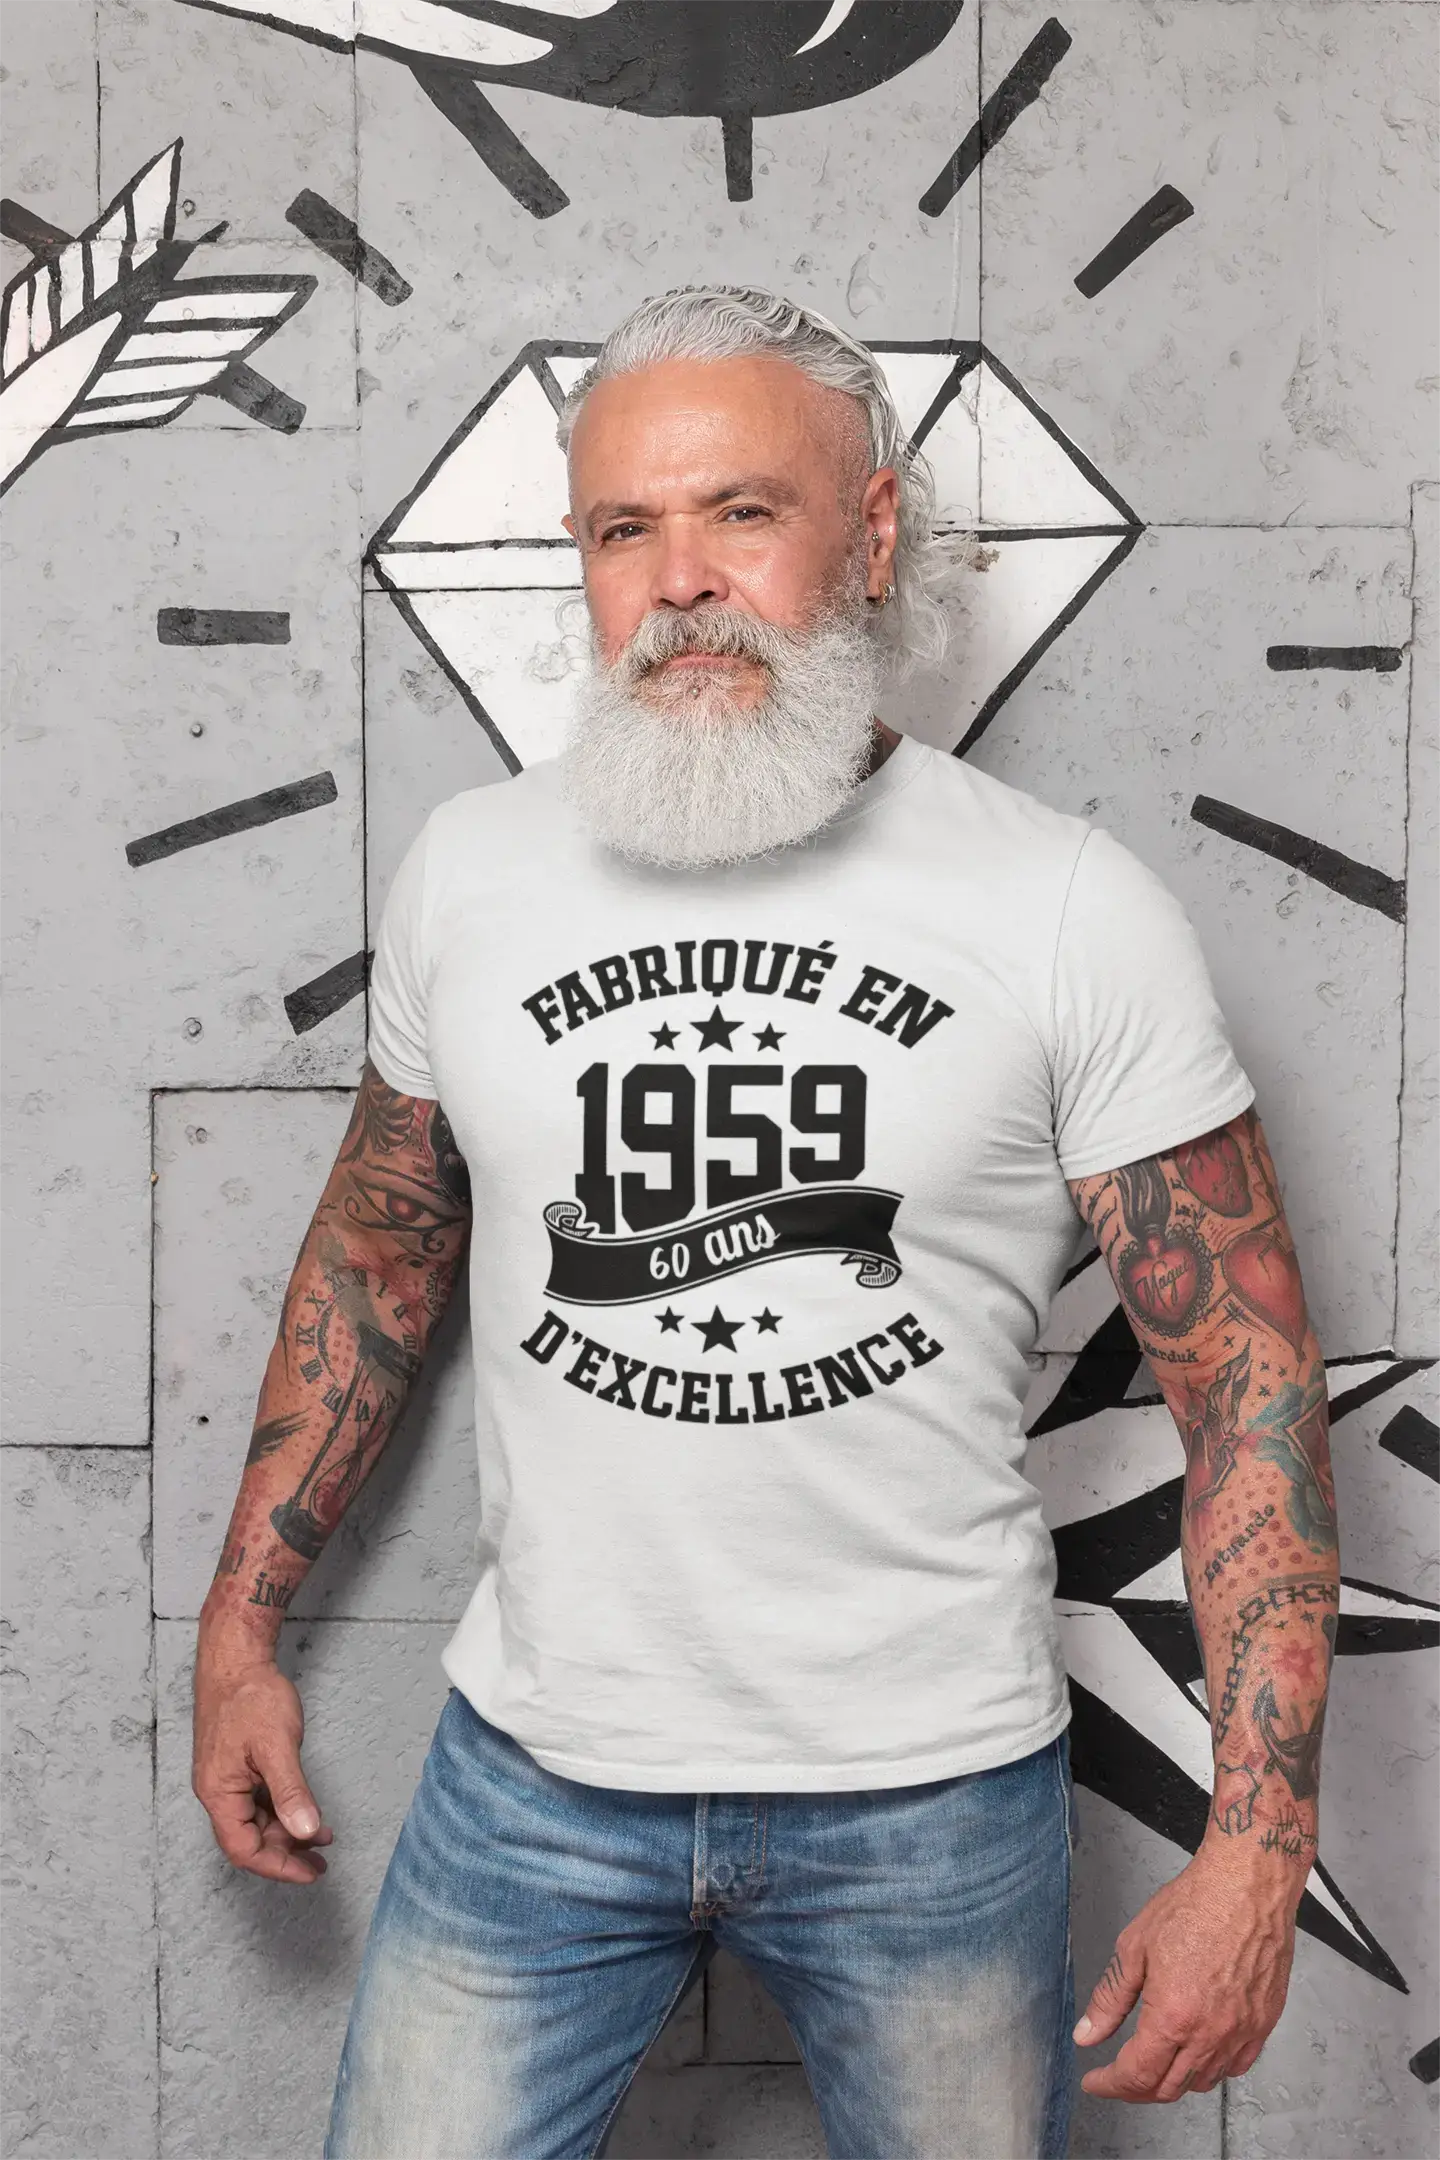 ULTRABASIC – Hergestellt im Jahr 1959, 60 Jahre alt. Geniales Unisex-T-Shirt aus weißem Chiné